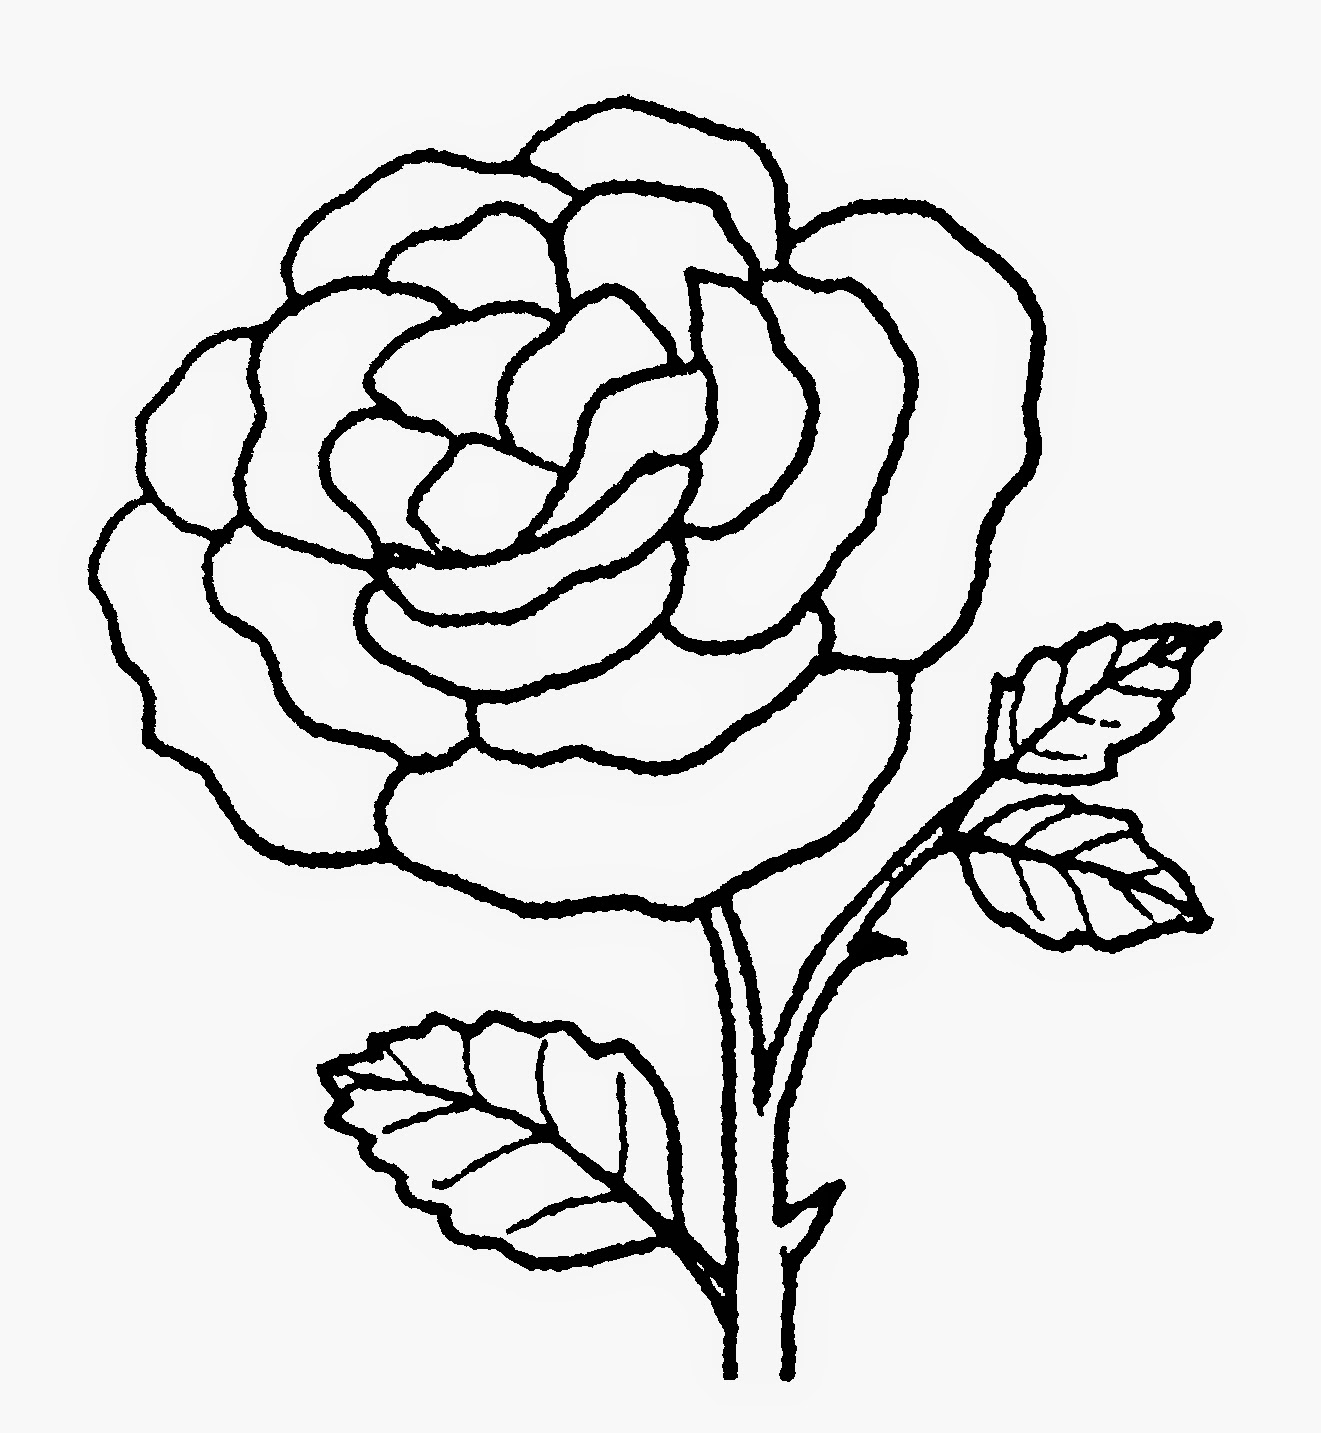 99 Gambar Animasi Bunga Mawar Hitam Putih Cikimmcom